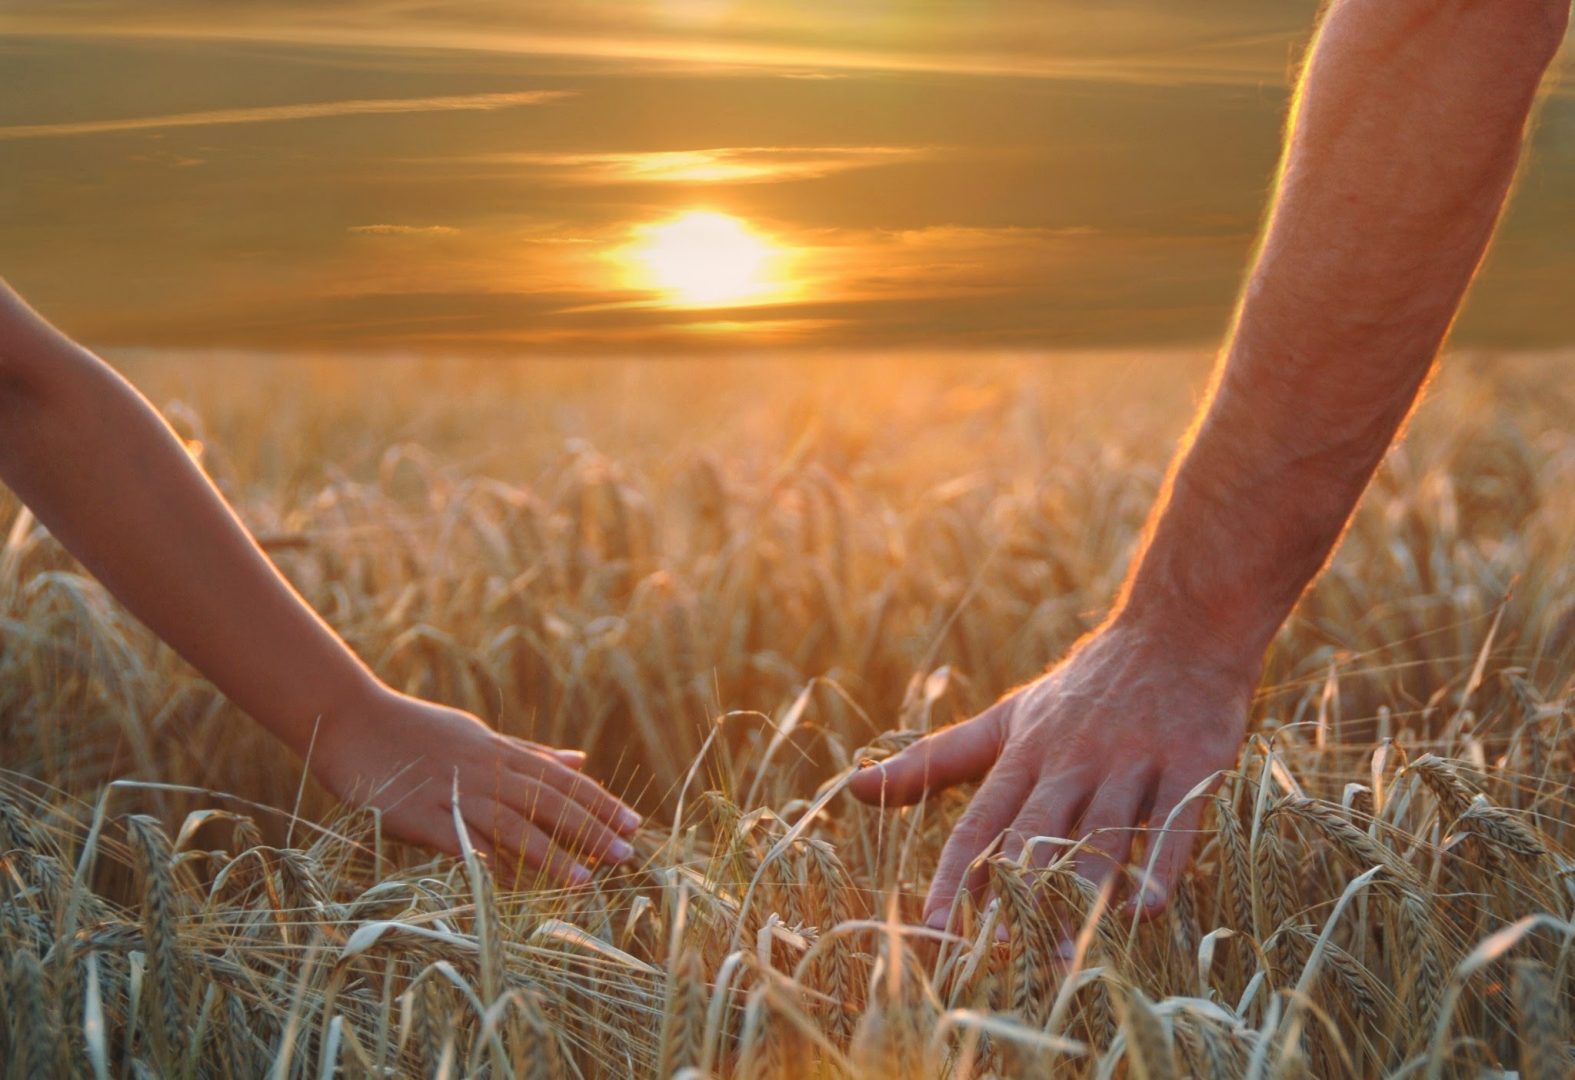 Берегите друг друга. Пшеничное поле человек. Берегите друг друга любите. Любите цените и берегите друг друга. Тем что именно вы хотите